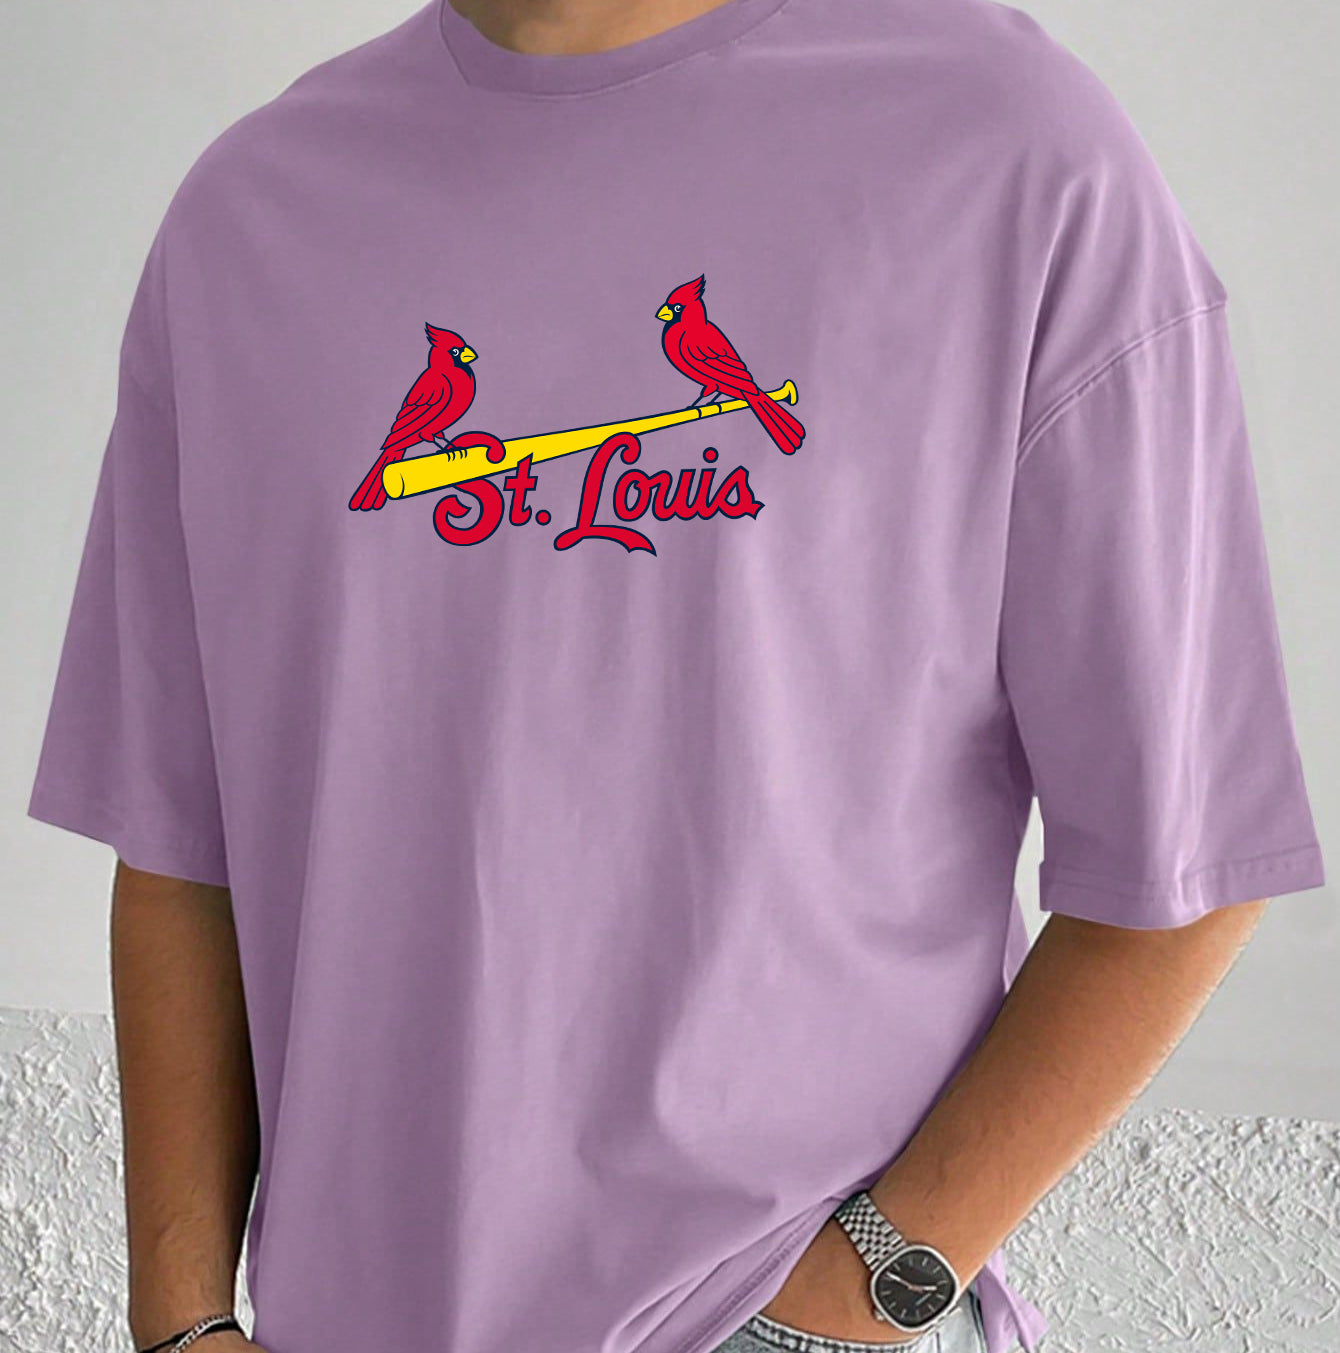 St. Louis Cardinals Baseball Men's Cotton T-shirt